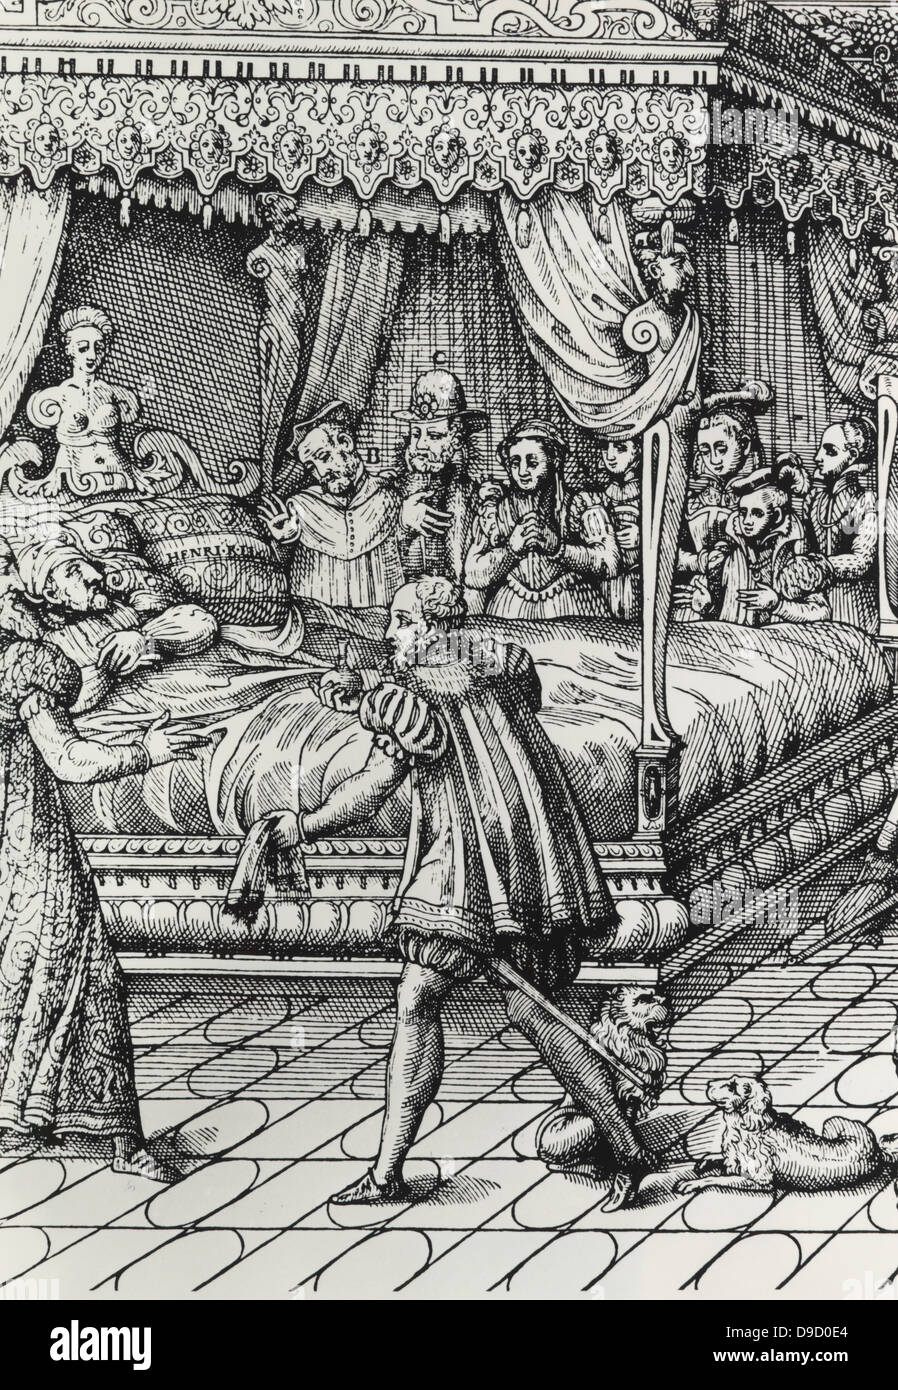 Enrique II (1519-1559), rey de Francia desde 1547. Murió a causa de una herida recibida mientras justas. Henry, en su lecho de muerte. Grabado. Foto de stock